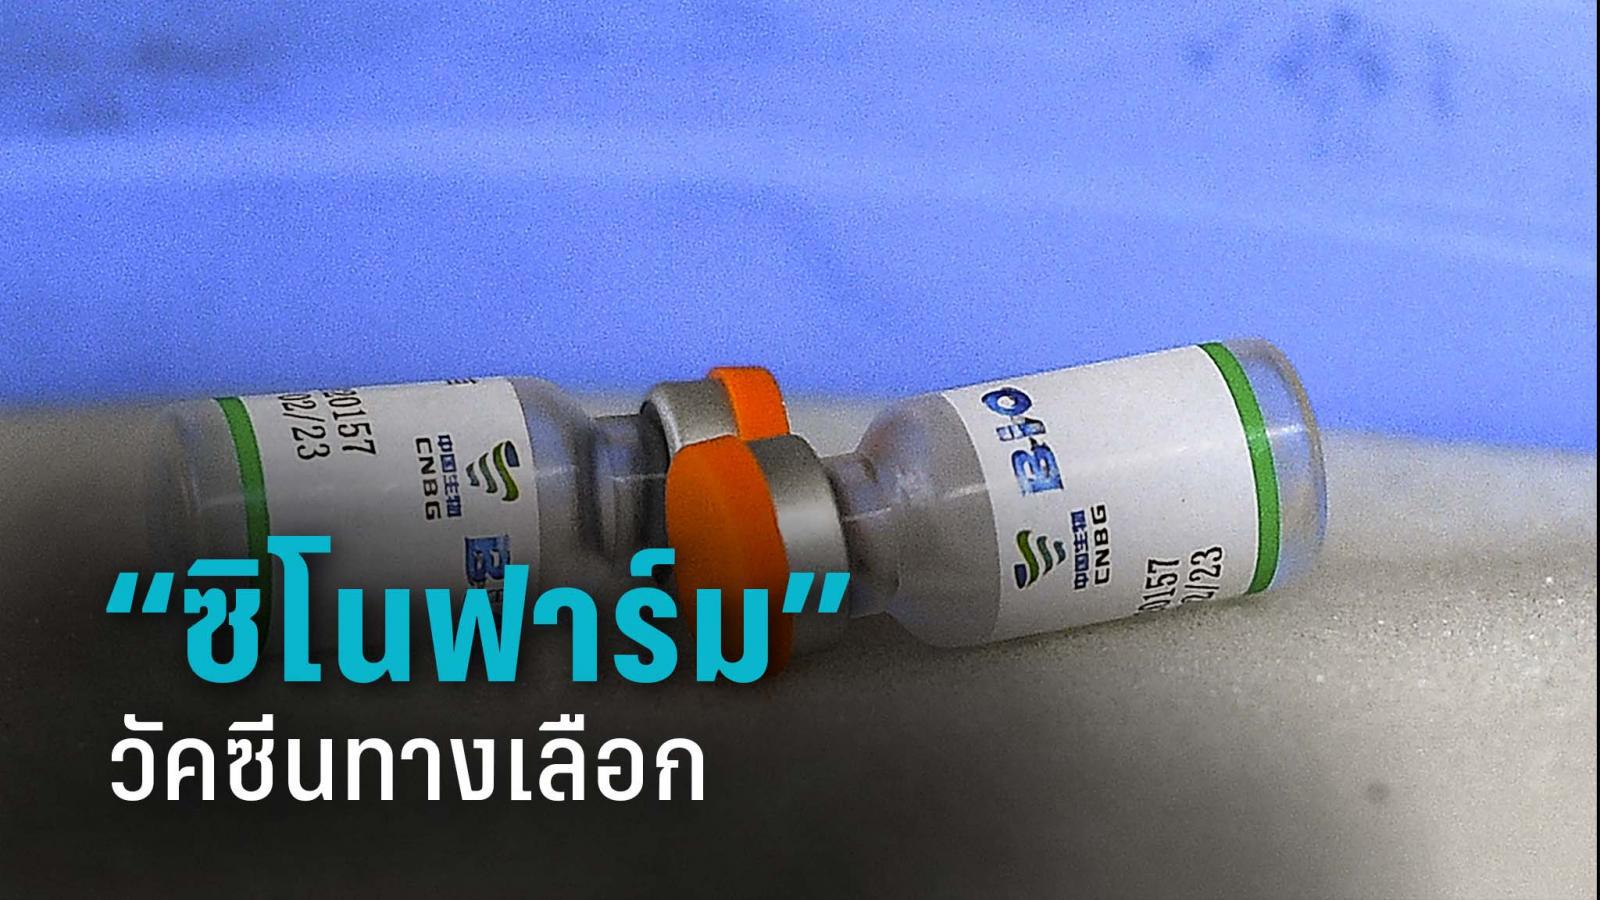 ทำความรู้จัก “ซิโนฟาร์ม” วัคซีนโควิด-19 ทางเลือกใหม่ที่กำลังจะเข้าไทย